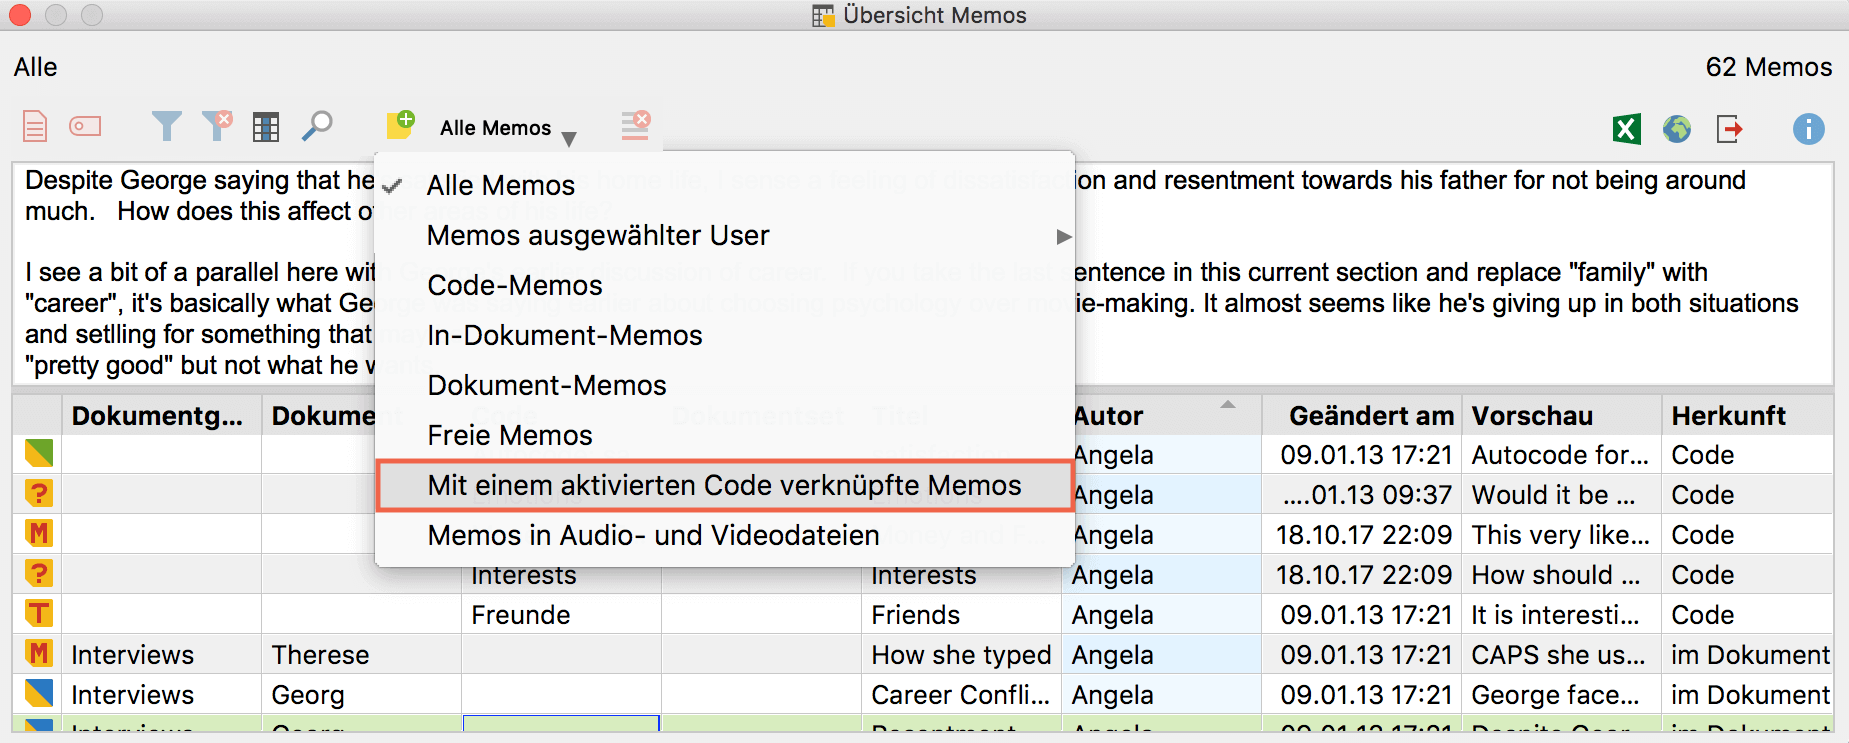 Memos aktivierter Codes in der „Übersicht Memos“ anzeigen